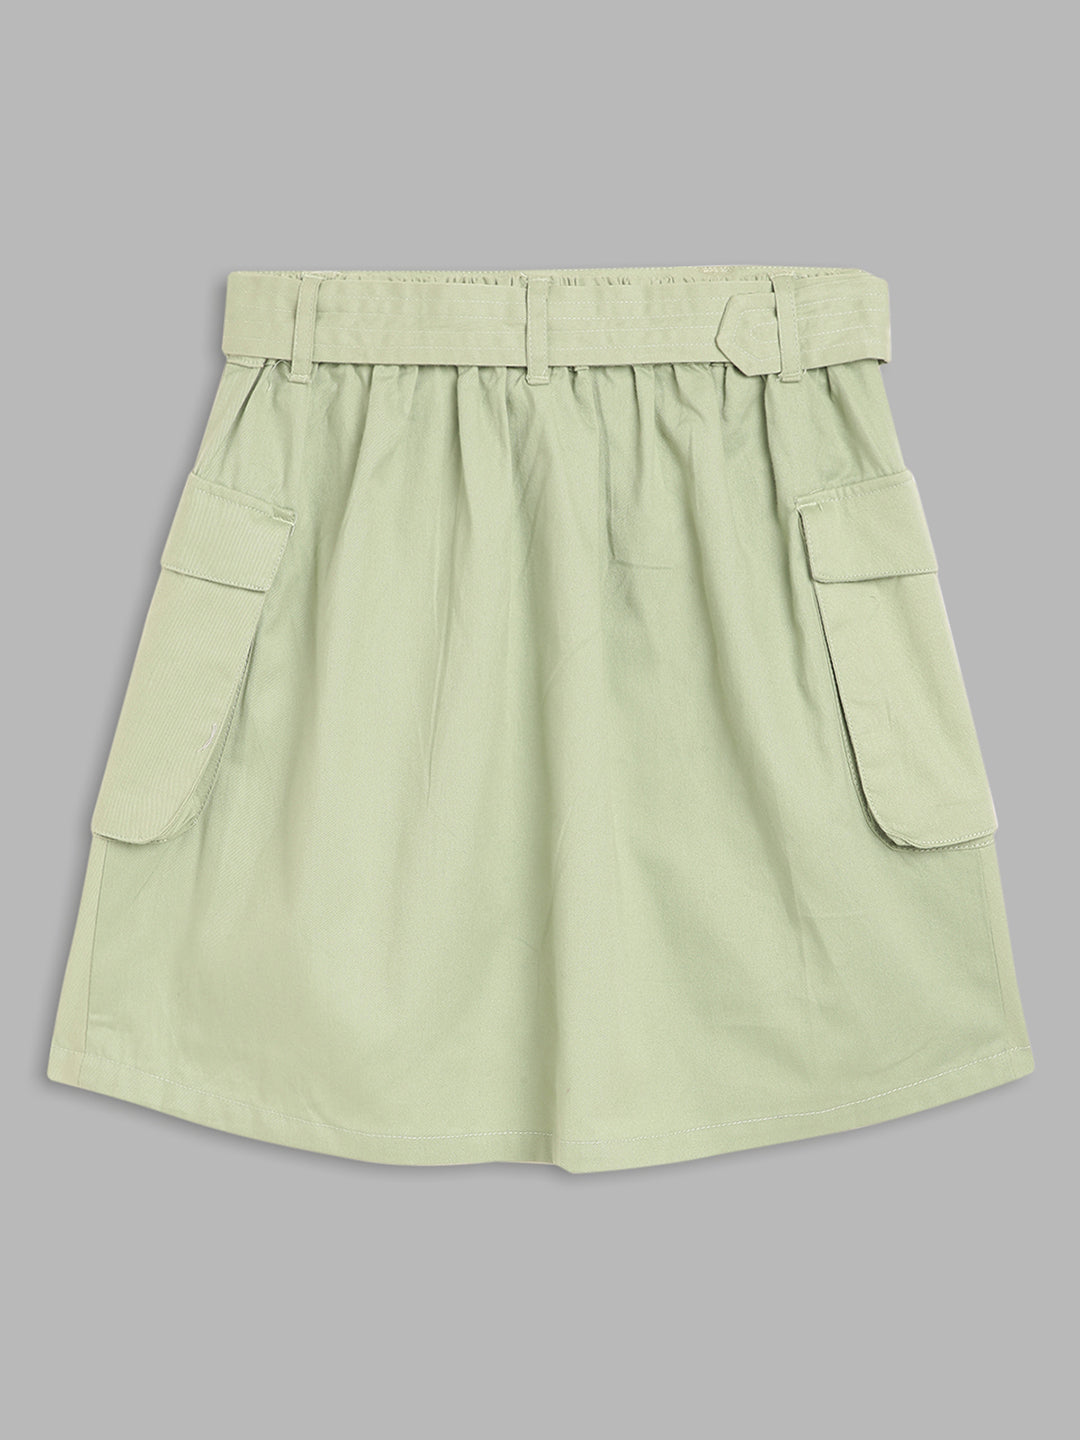 Elle Kids Girls Olive Solid Regular Fit Skirt